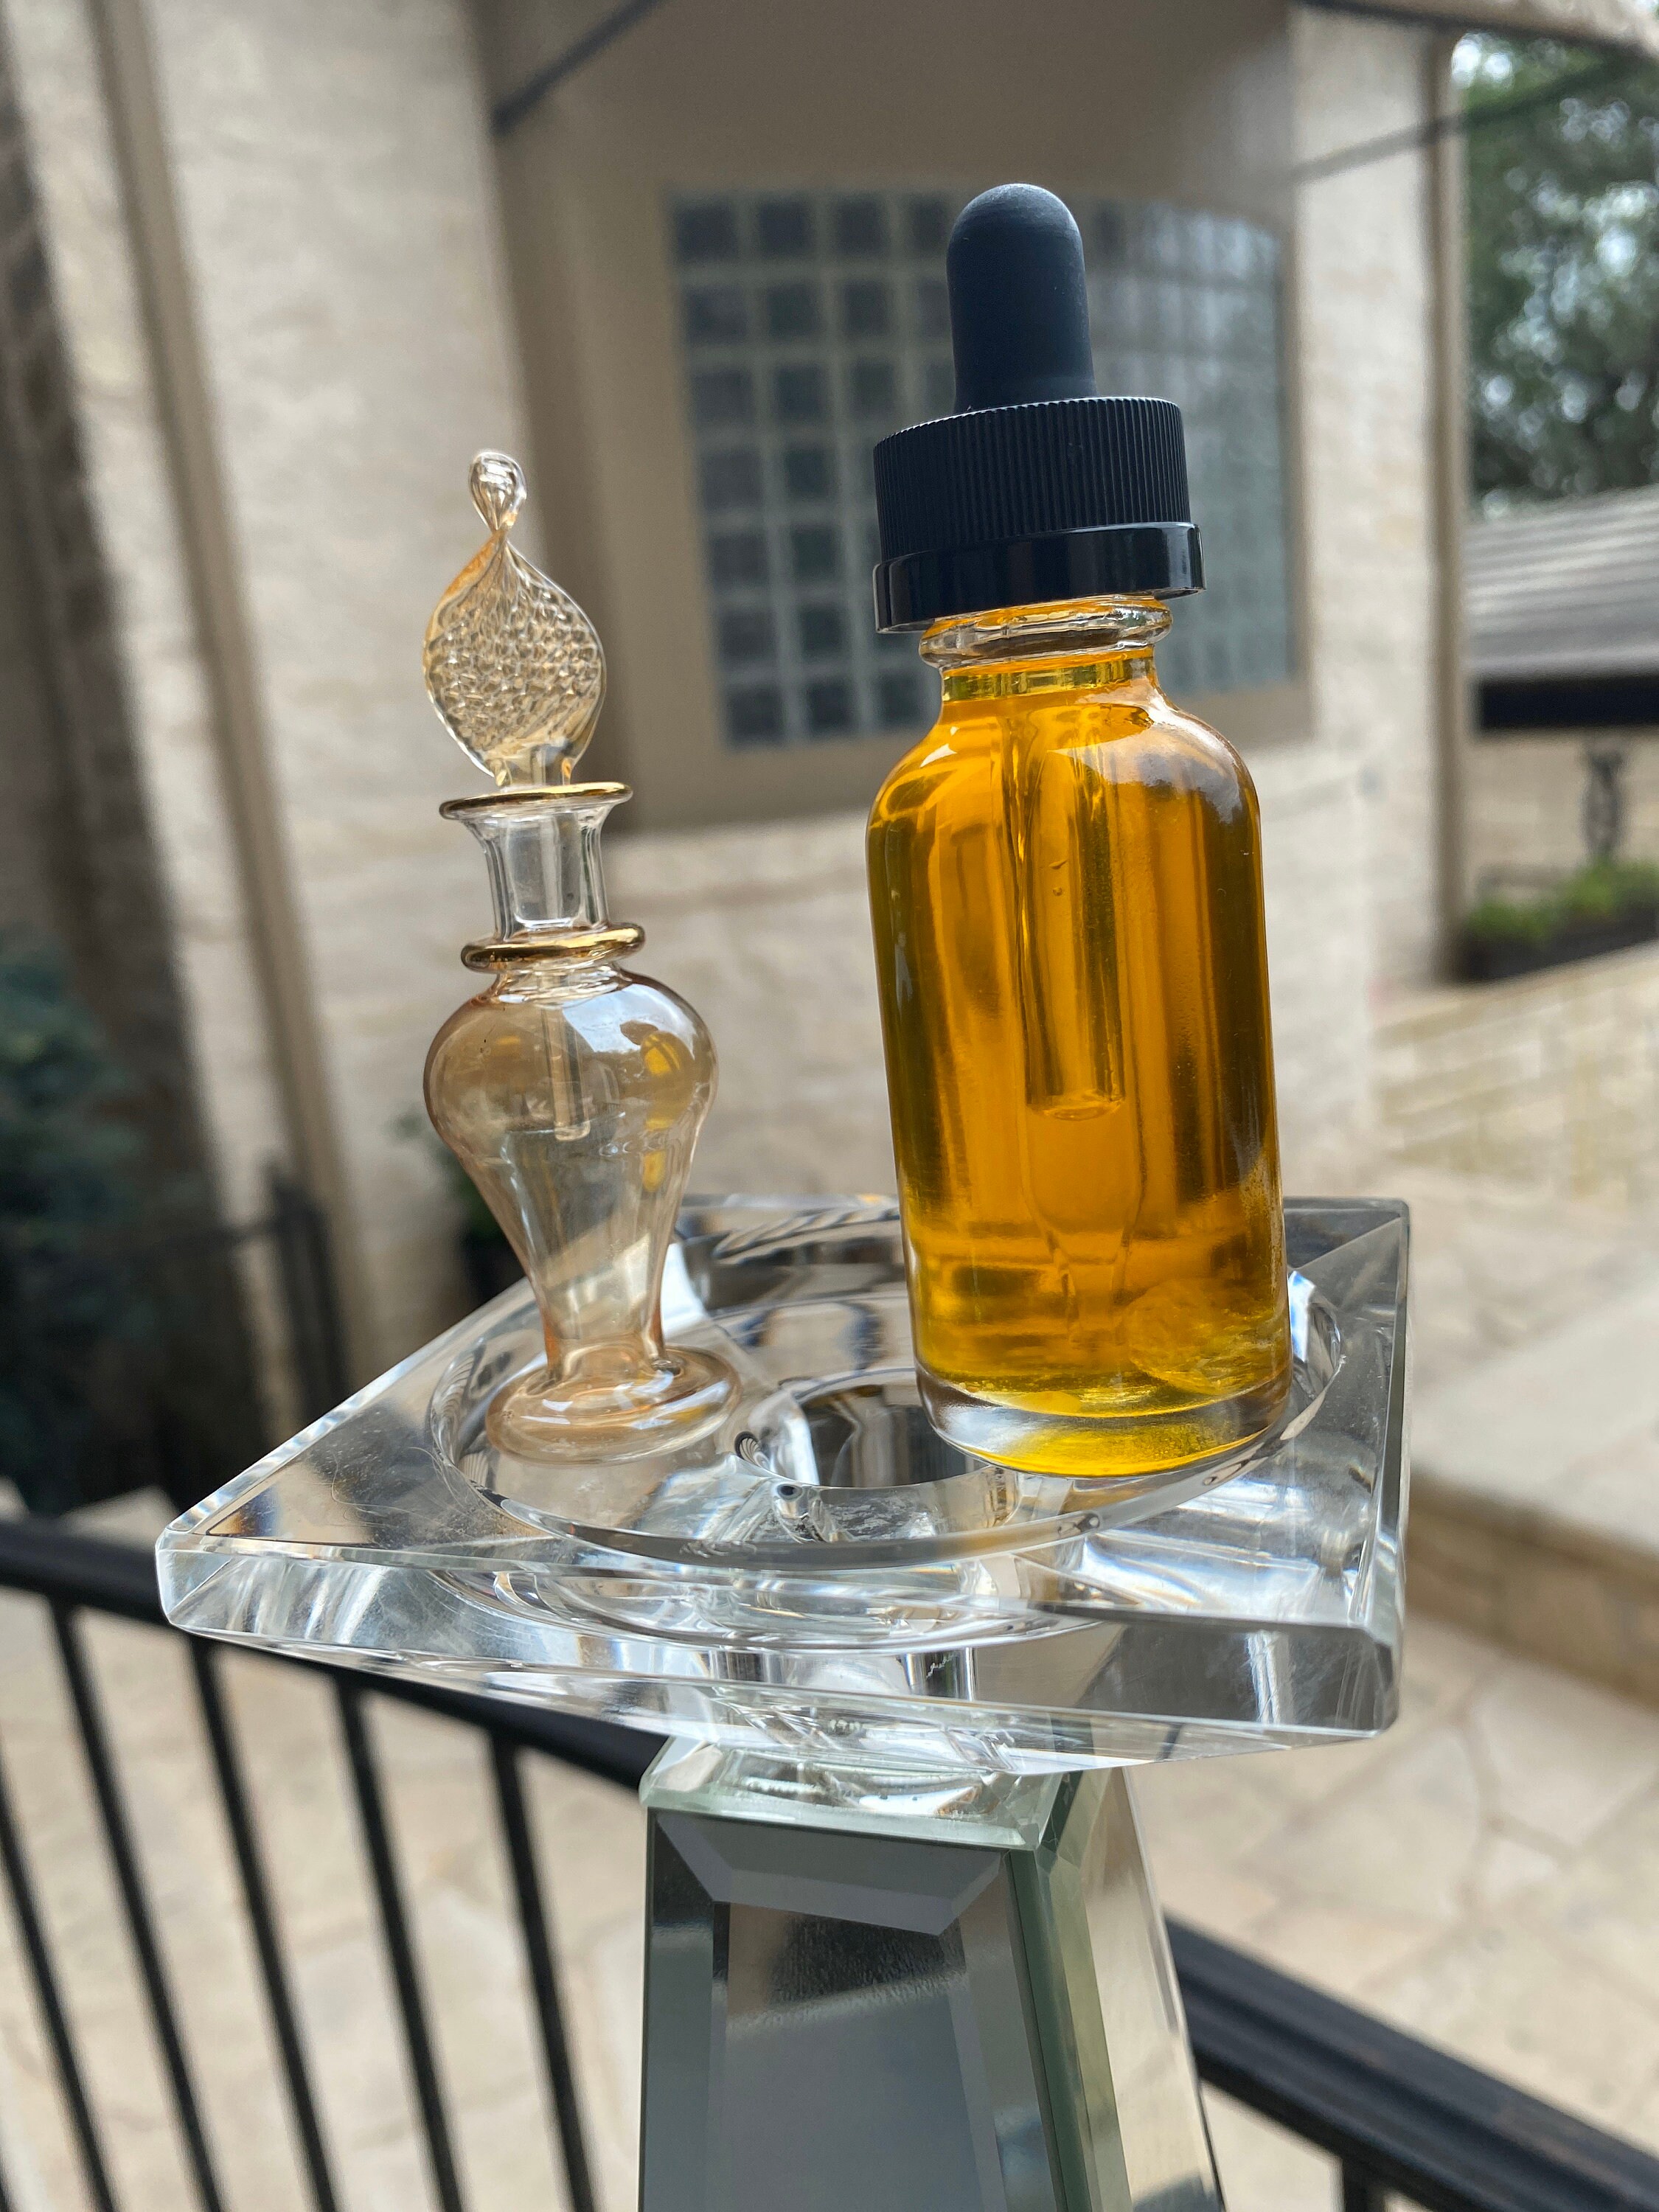 Pure Essential Oil Fragrance Scent Vanilla Dropper Bottle 10ml 